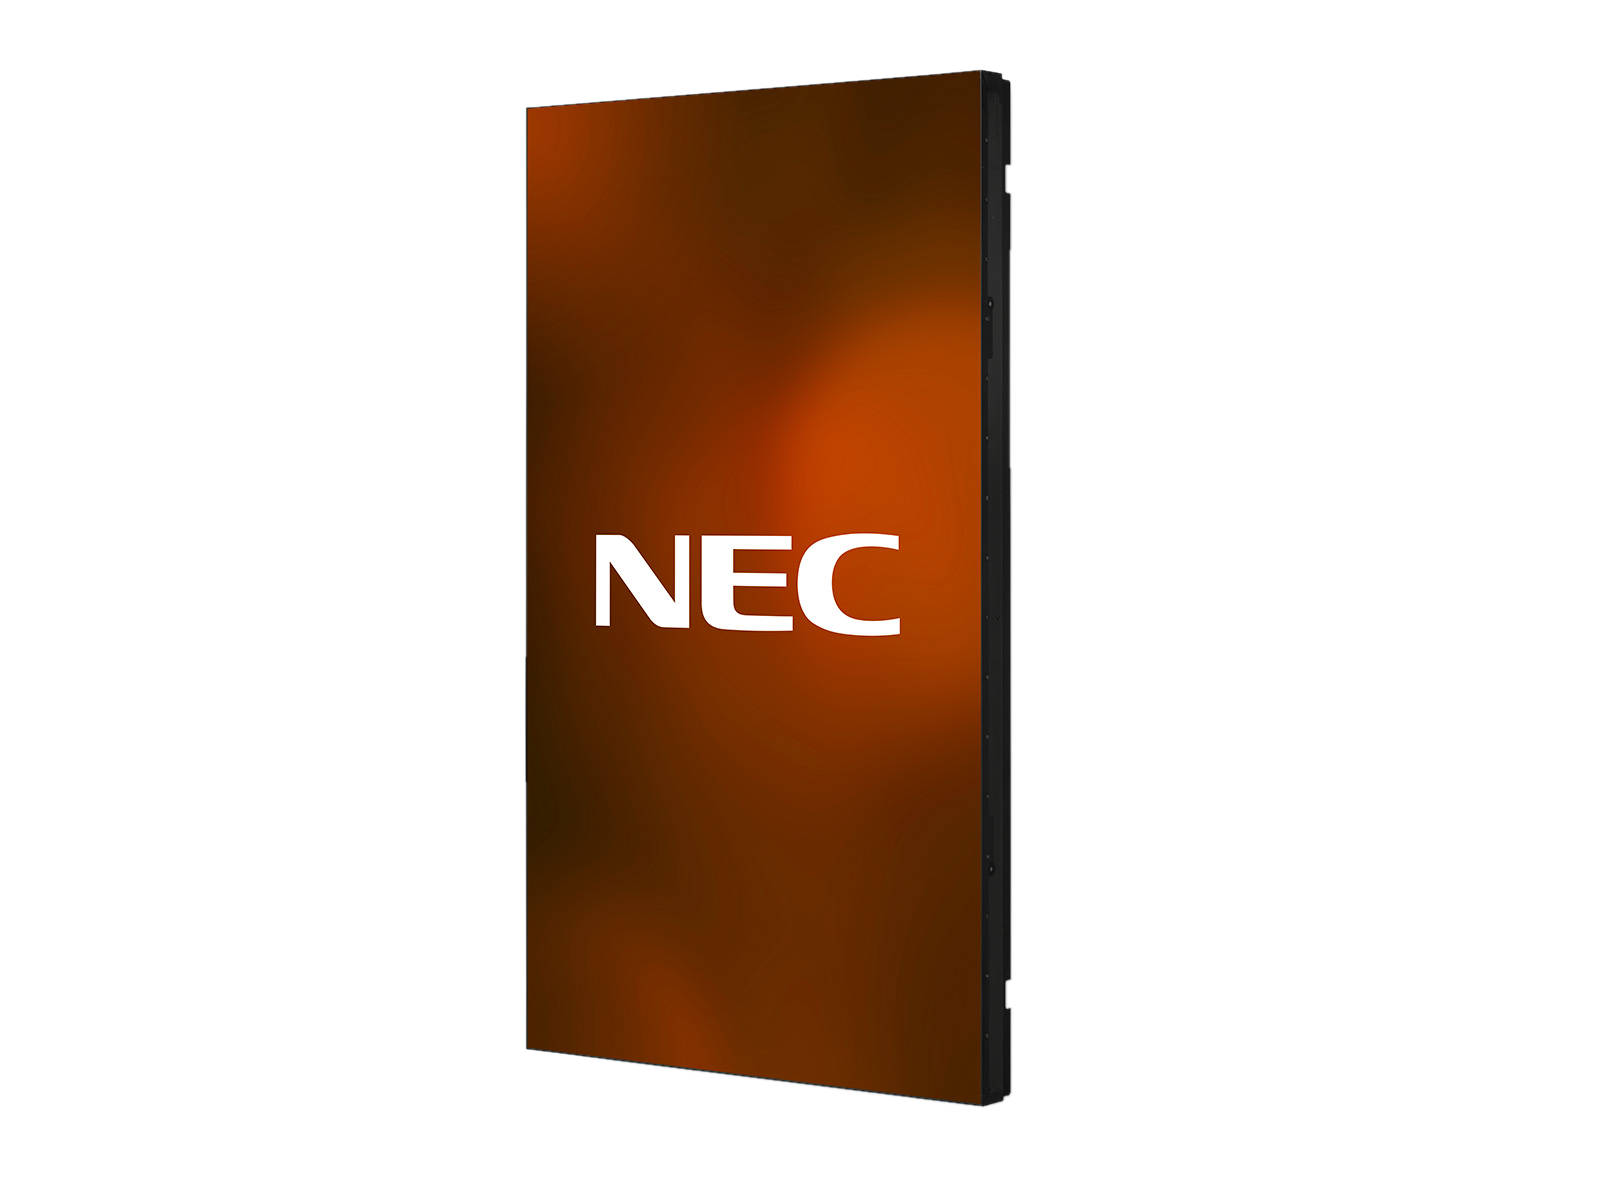 NEC_UN462A_Lt_Port_content-logo_1600x1200-4